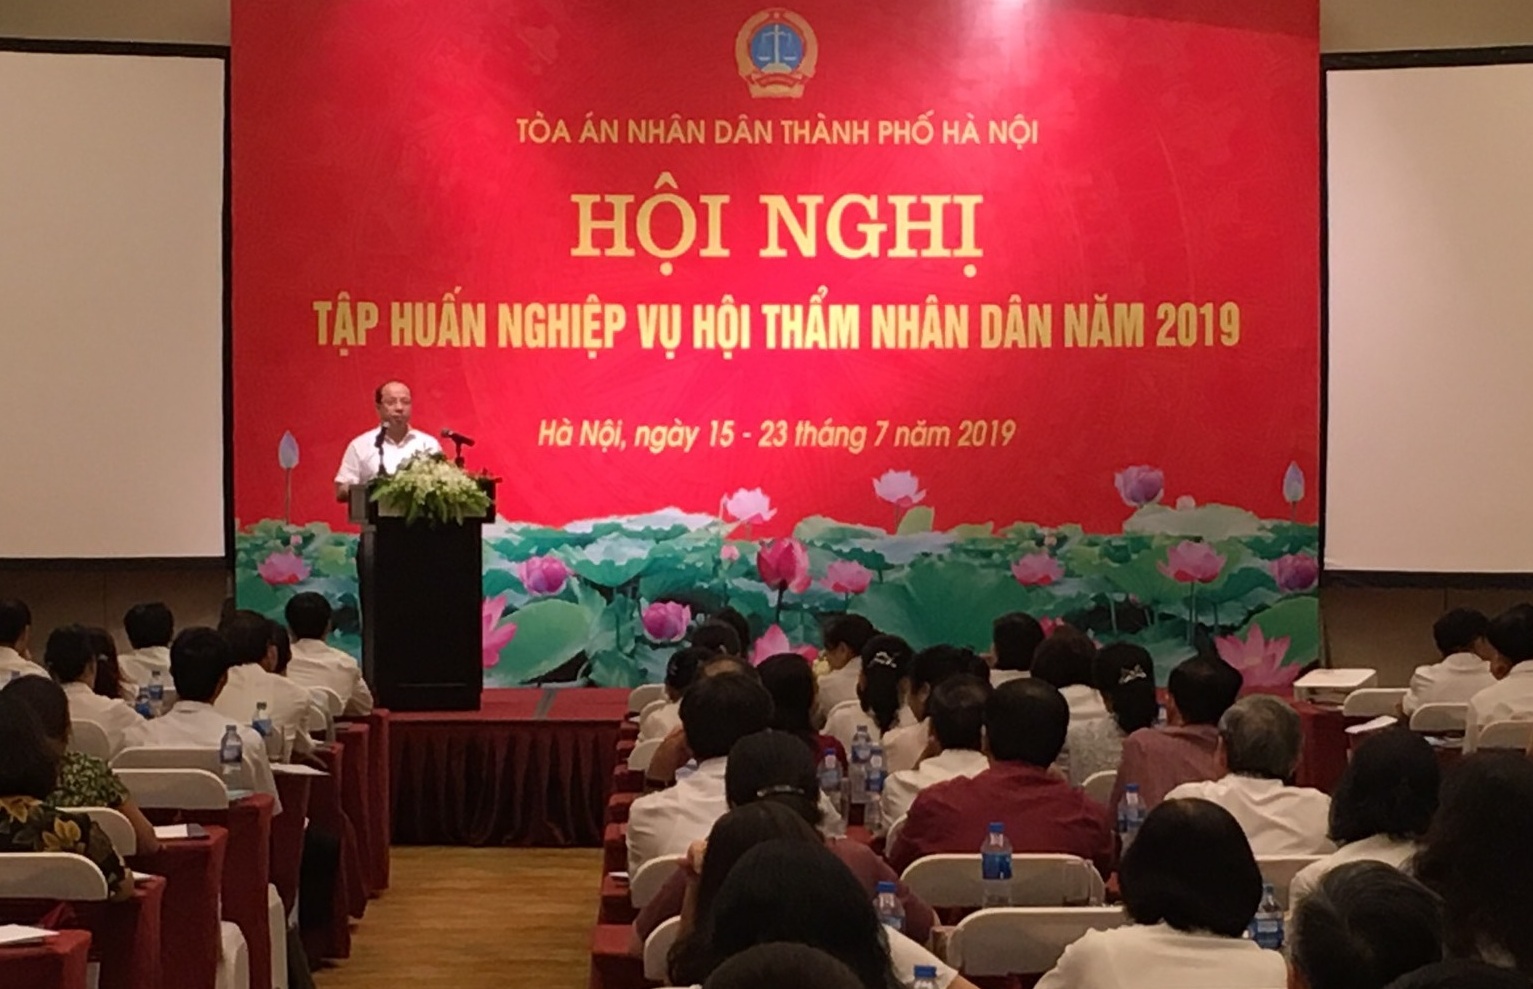 Tòa án nhân dân thành phố Hà Nội tổ chức tập huấn nghiệp vụ Hội thẩm nhân dân